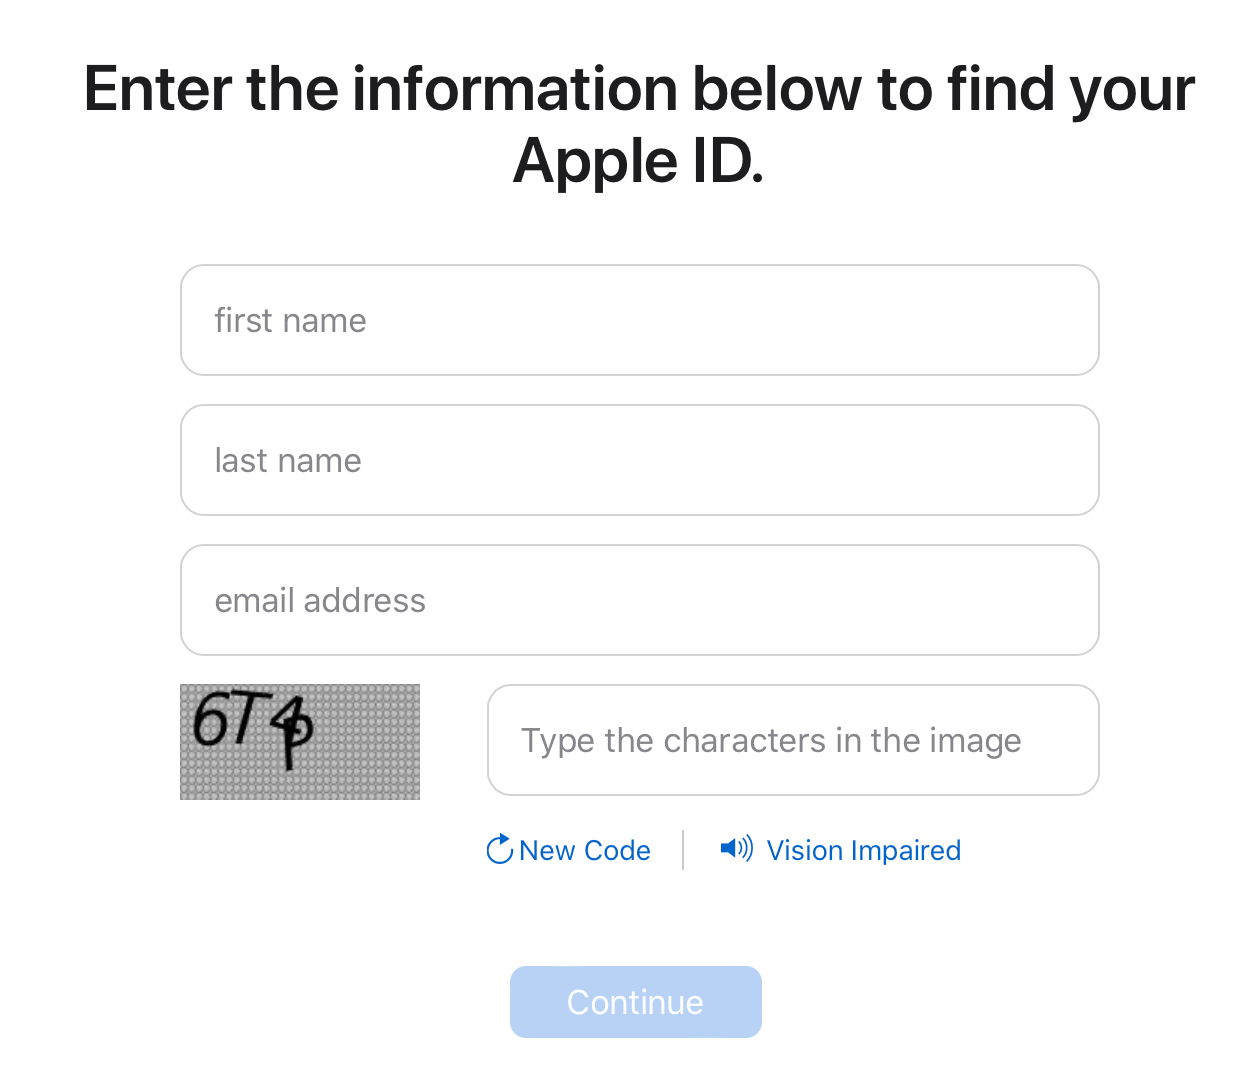 Apple ID lookup tool on apple.com to find your Apple ID